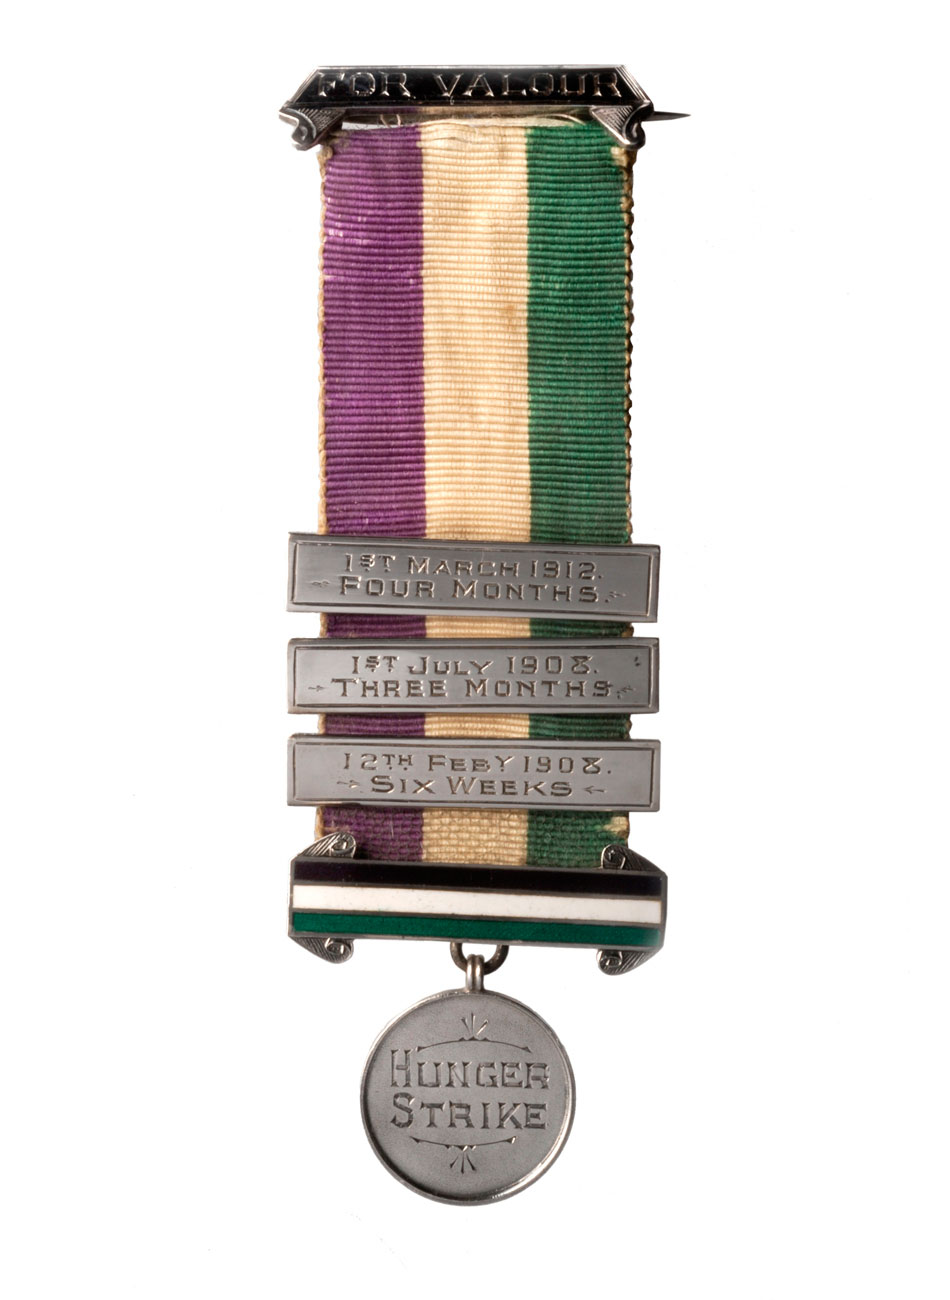 Suffragette hunger strike medal.